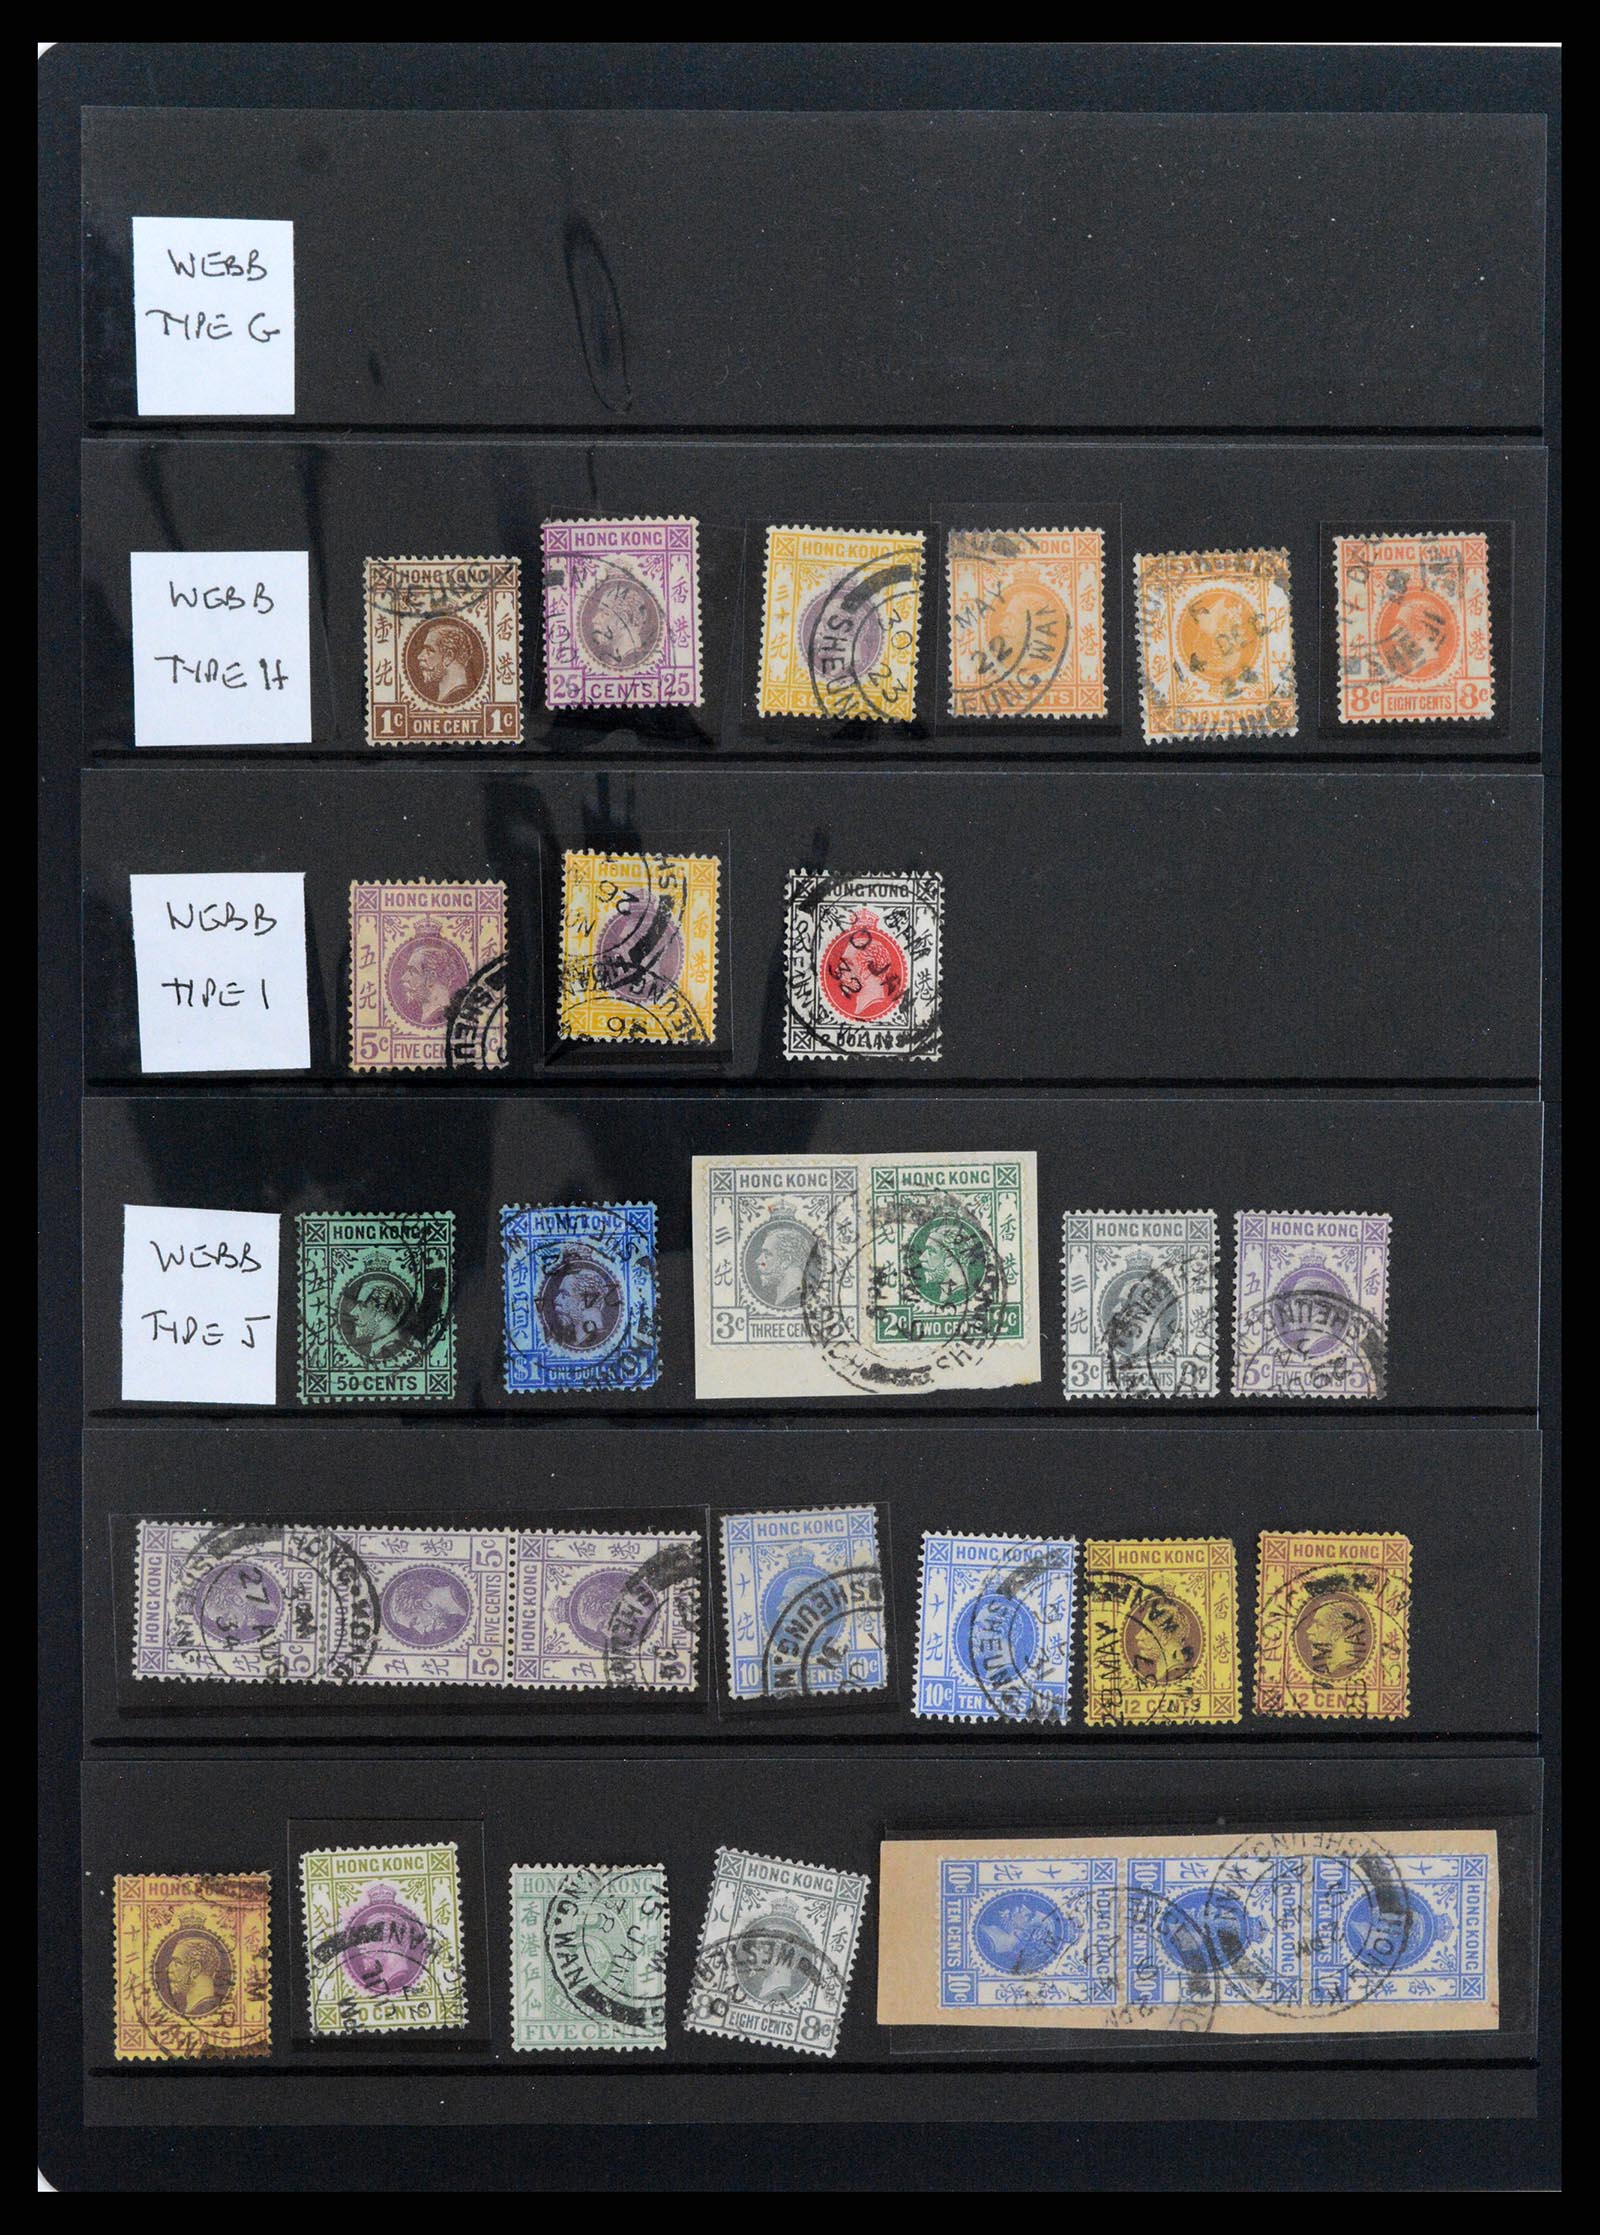 37358 055 - Stamp collection 37358 Hong Kong 1861-1997.